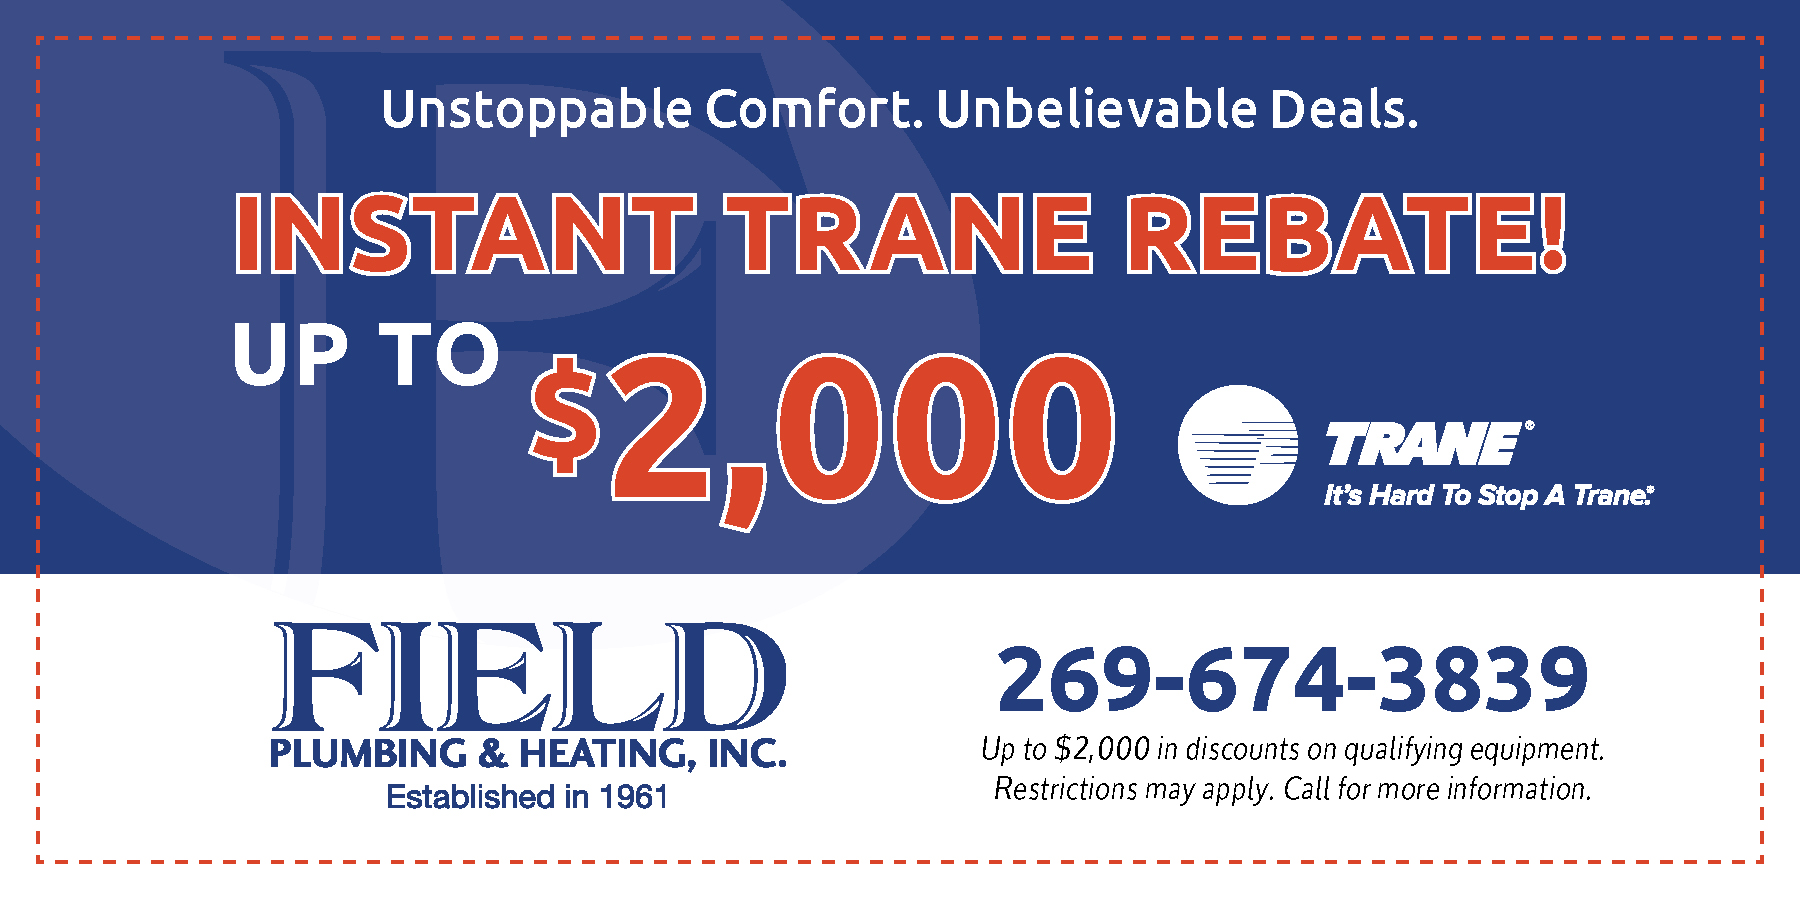 Trane rebates of up to $2,000.